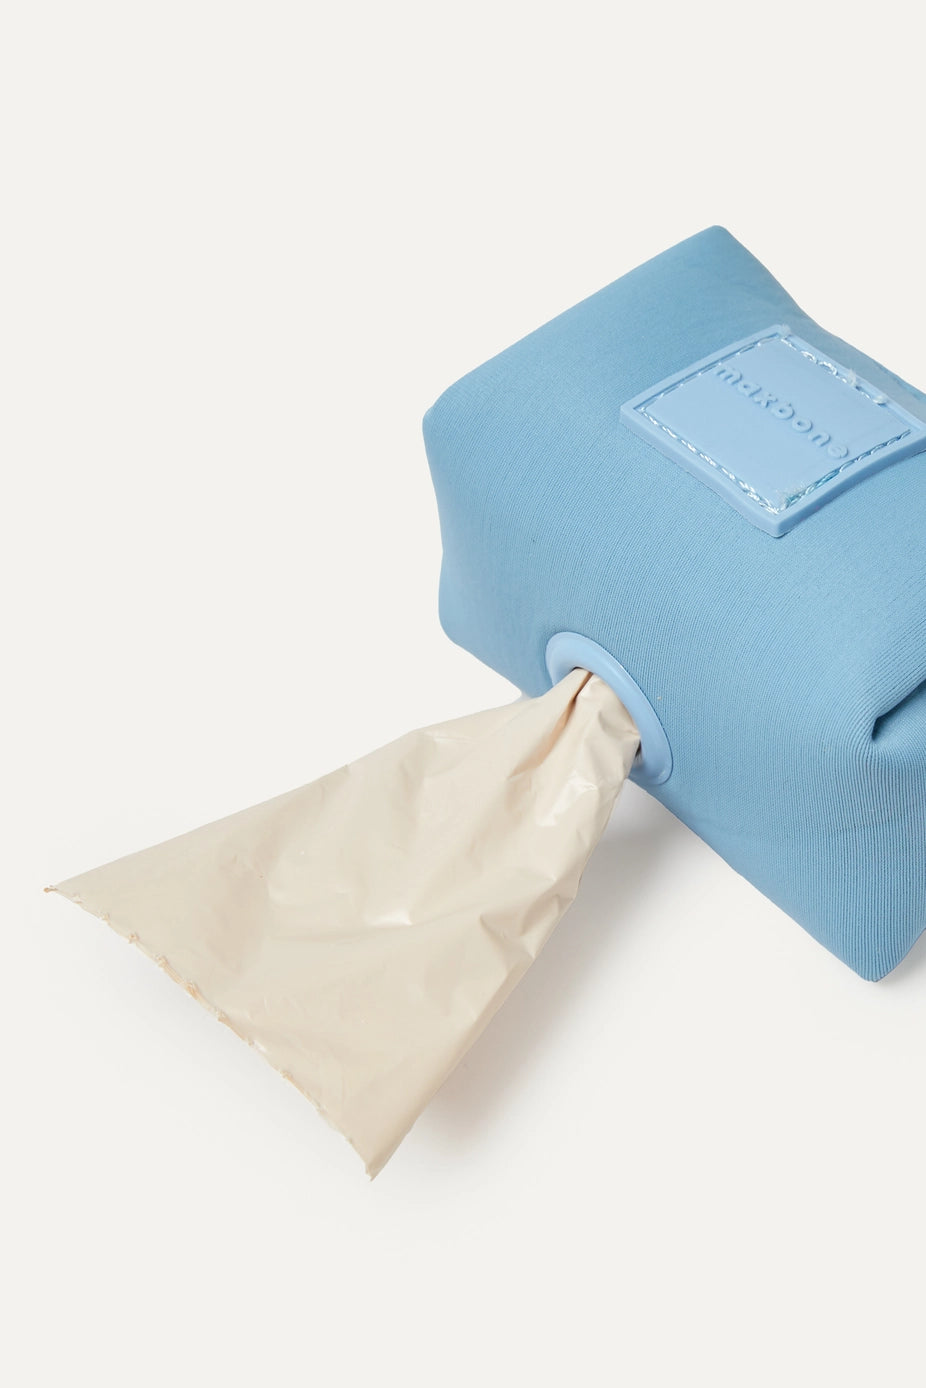 Easy Waste Poop Bag Holder - Dusk Blue